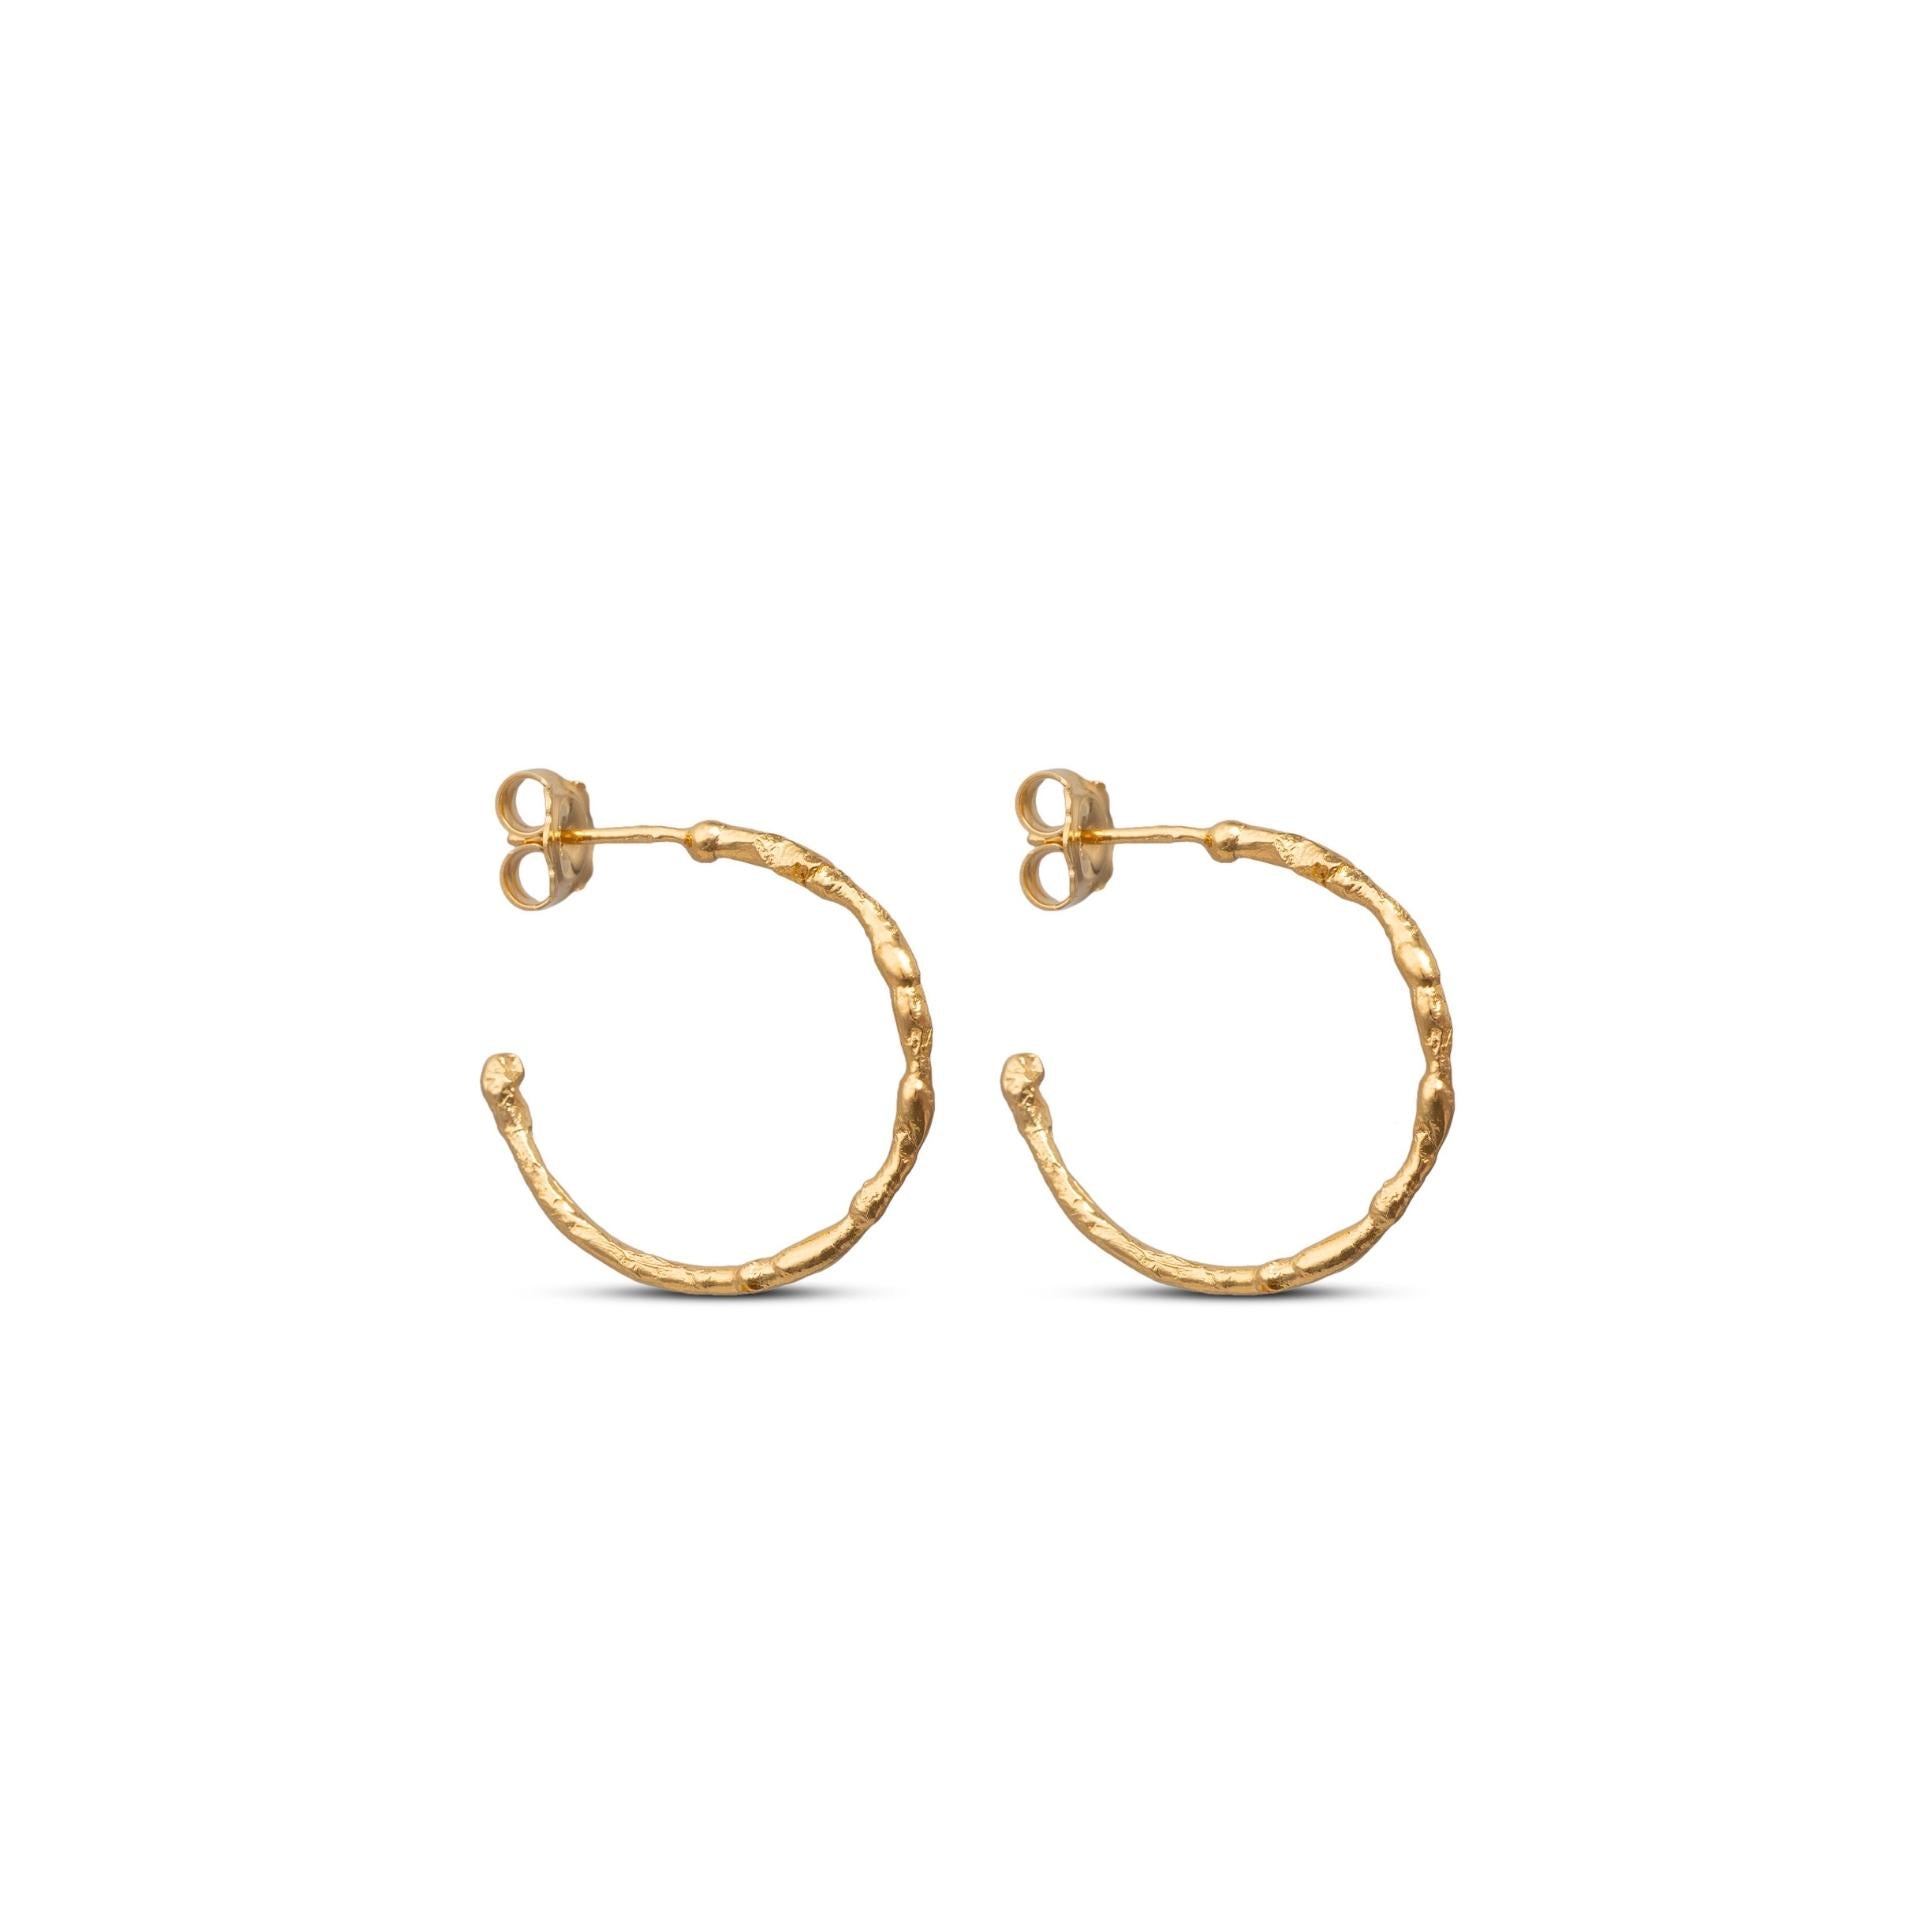 Textured Shapes hoops by April March | Medium hoop earrings